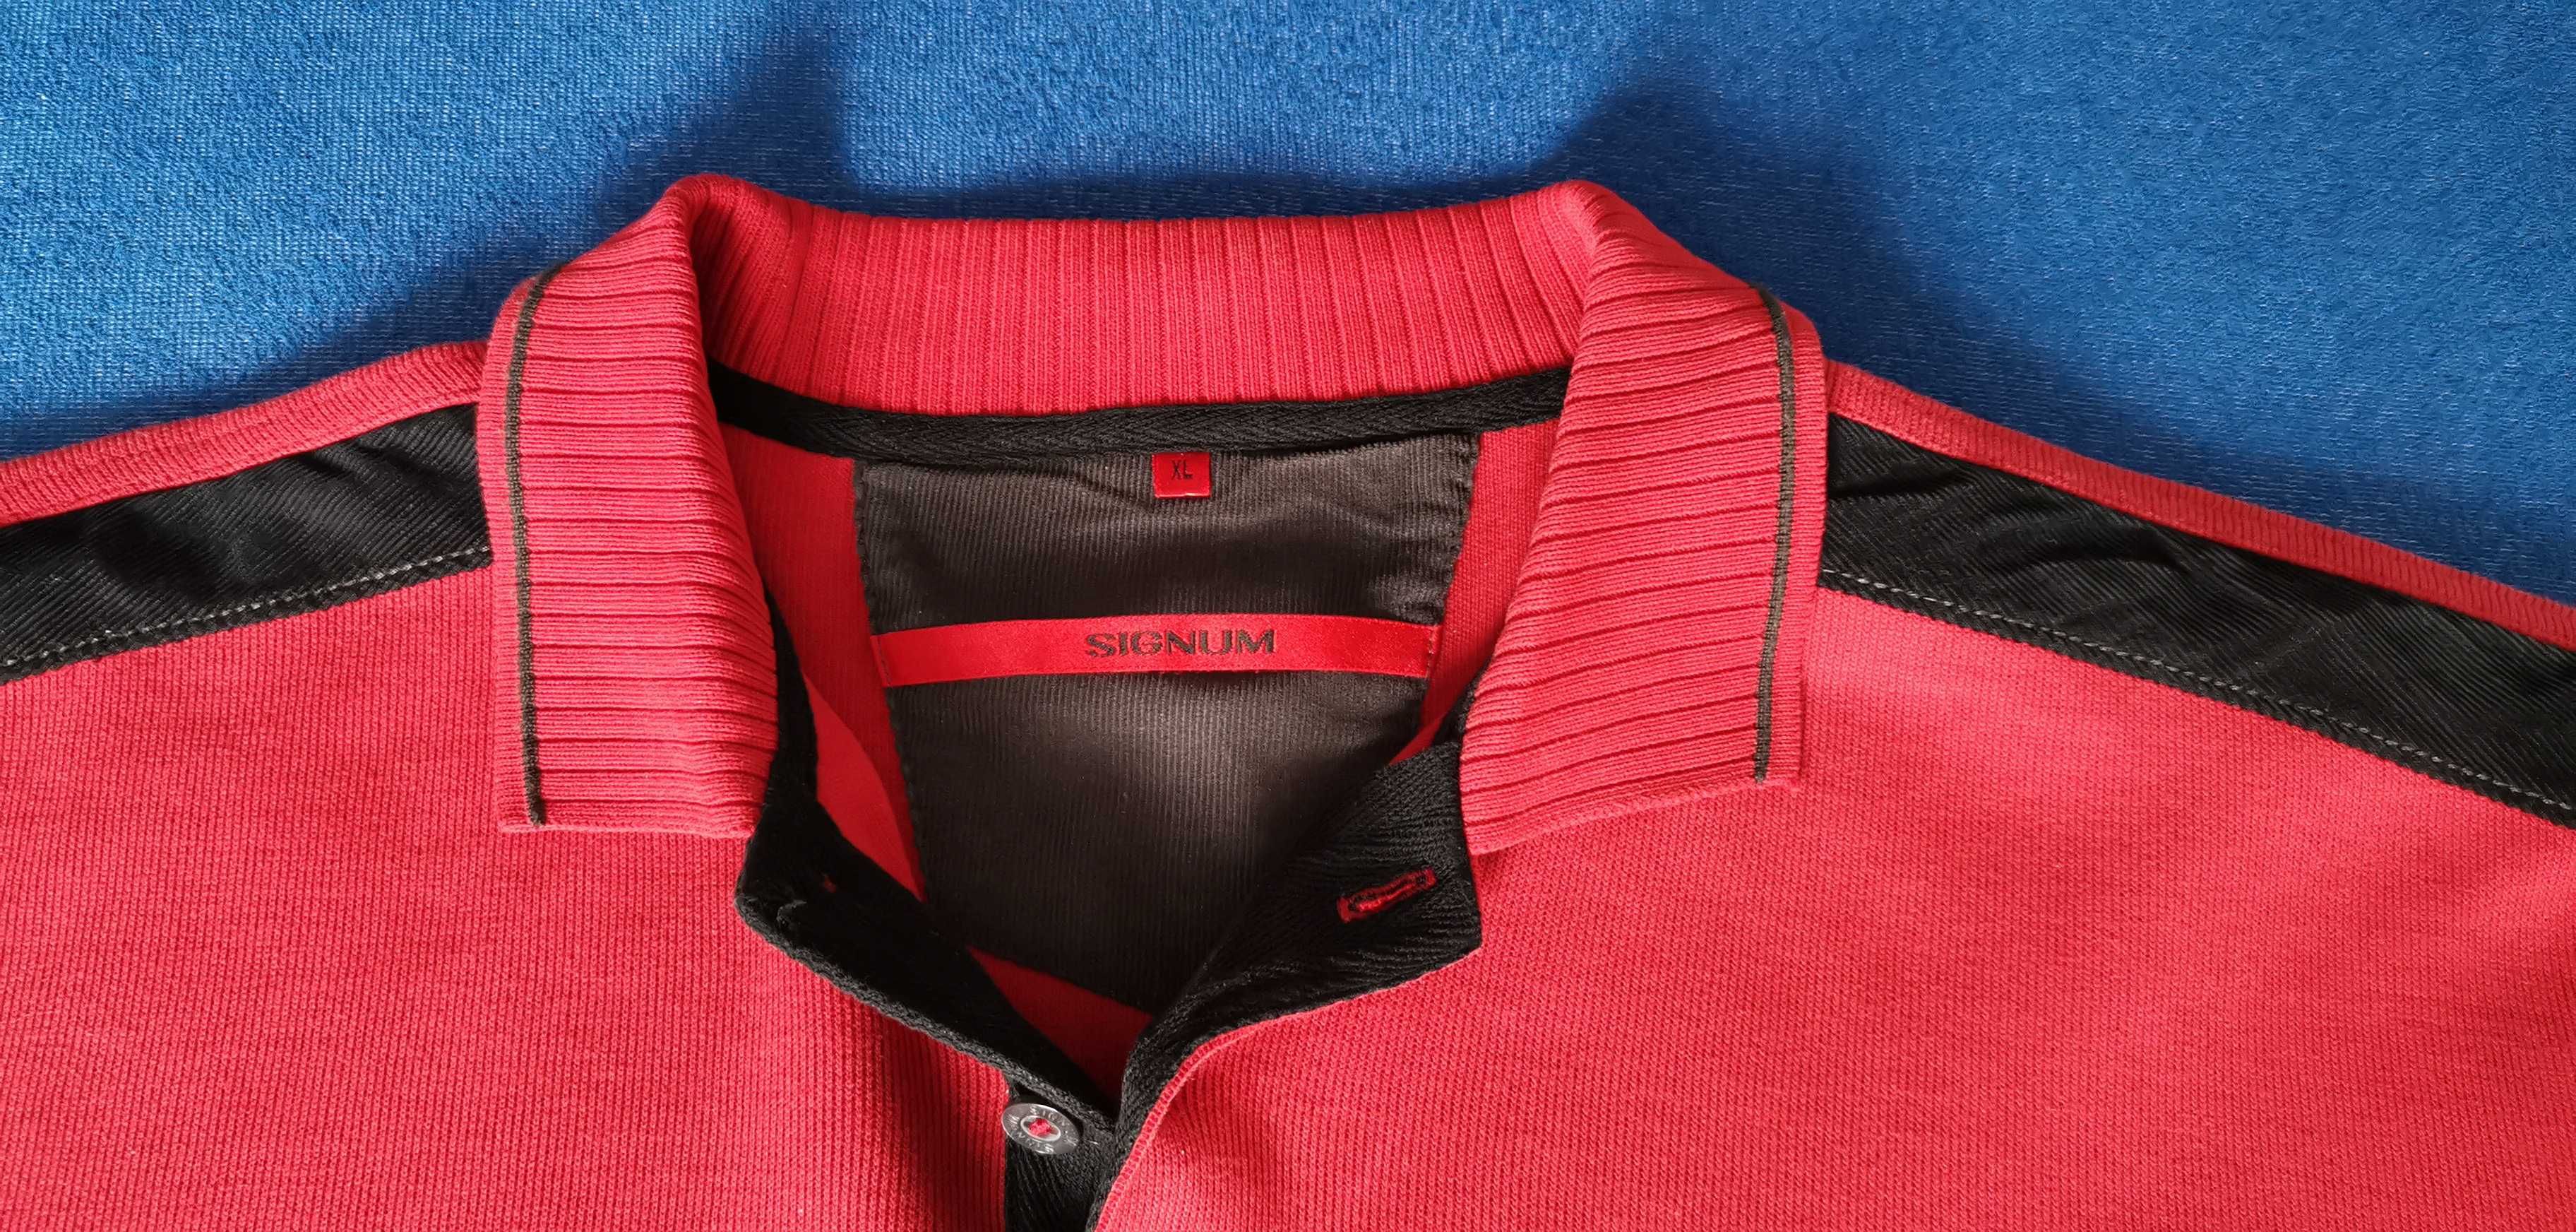 Lekki czerwony sweter męski SIGNUM 3 guziki BAWEŁNA PULOWER bluza XL